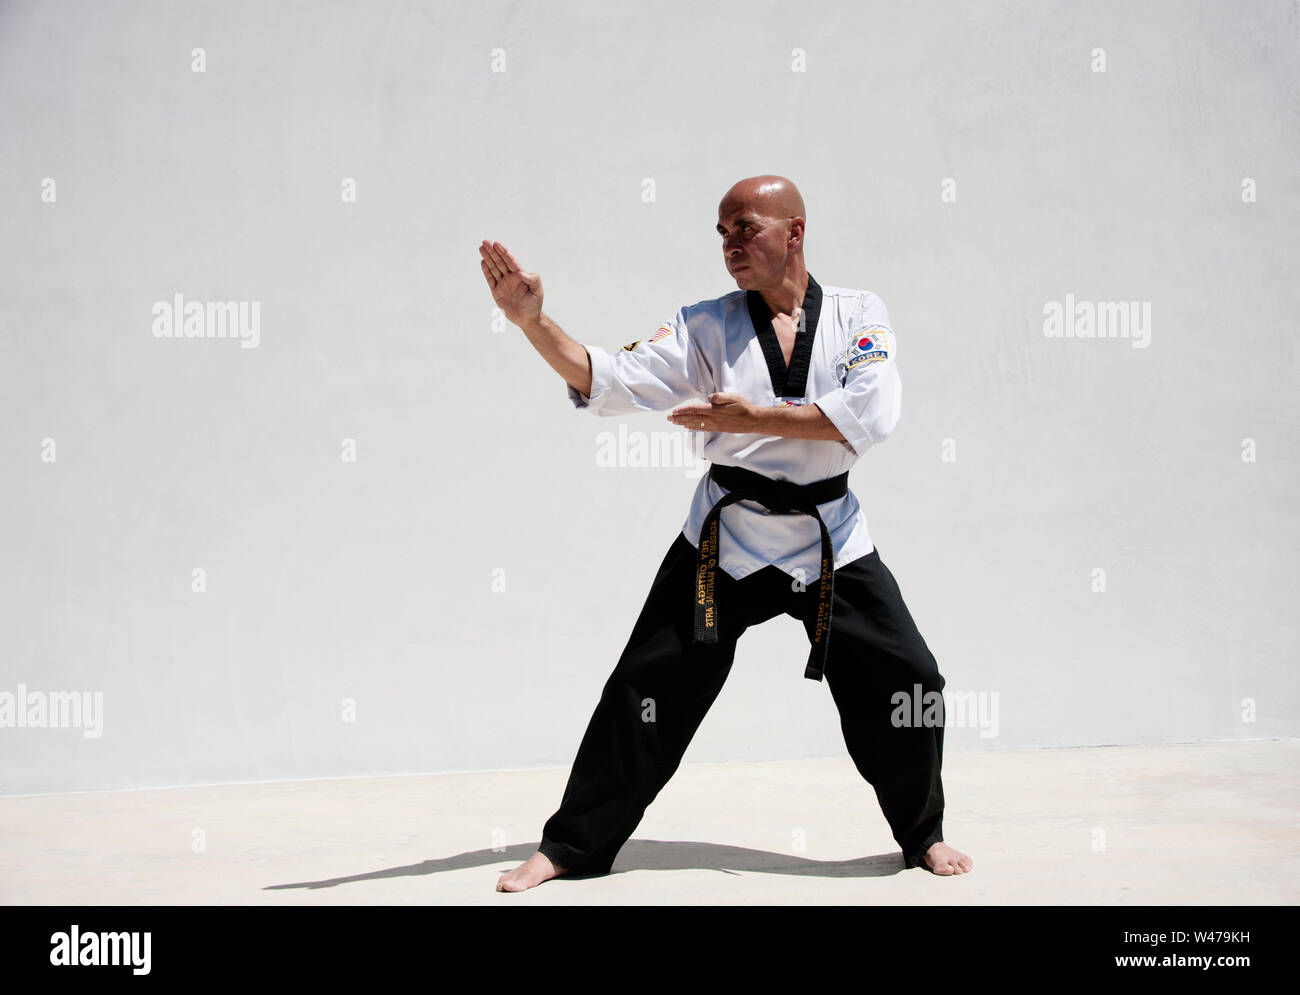 Kung fu cintura nera immagini e fotografie stock ad alta risoluzione - Alamy